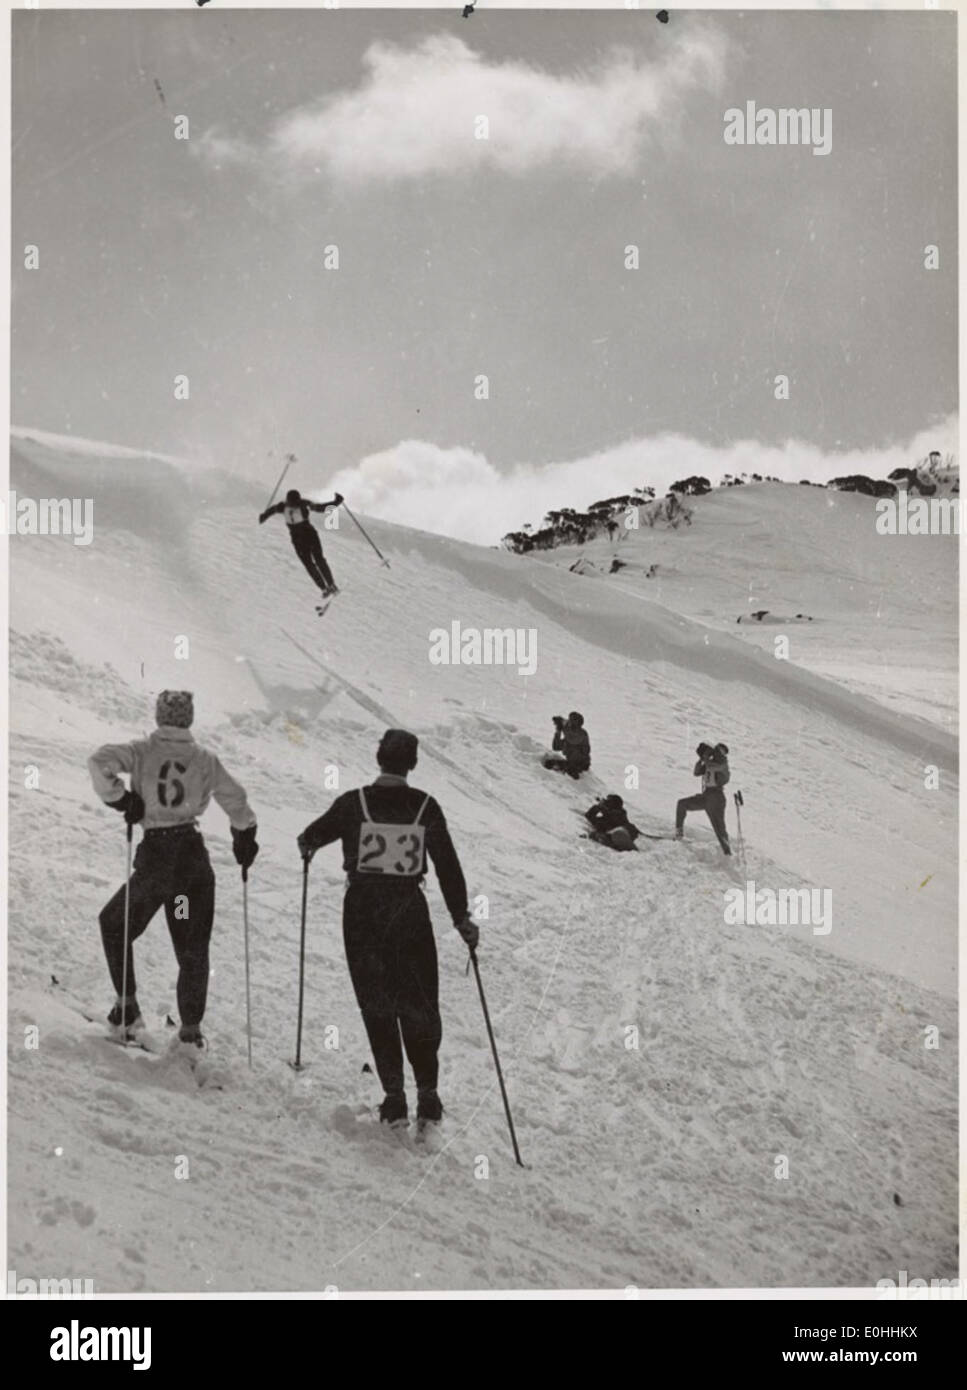 Männliche Skisprungfahrer beobachten einen Skifahrer, der einen Sprung auf den schneebedeckten Pisten, Snowy Mountains Region, New South Wales, Ca. 1942. Stockfoto